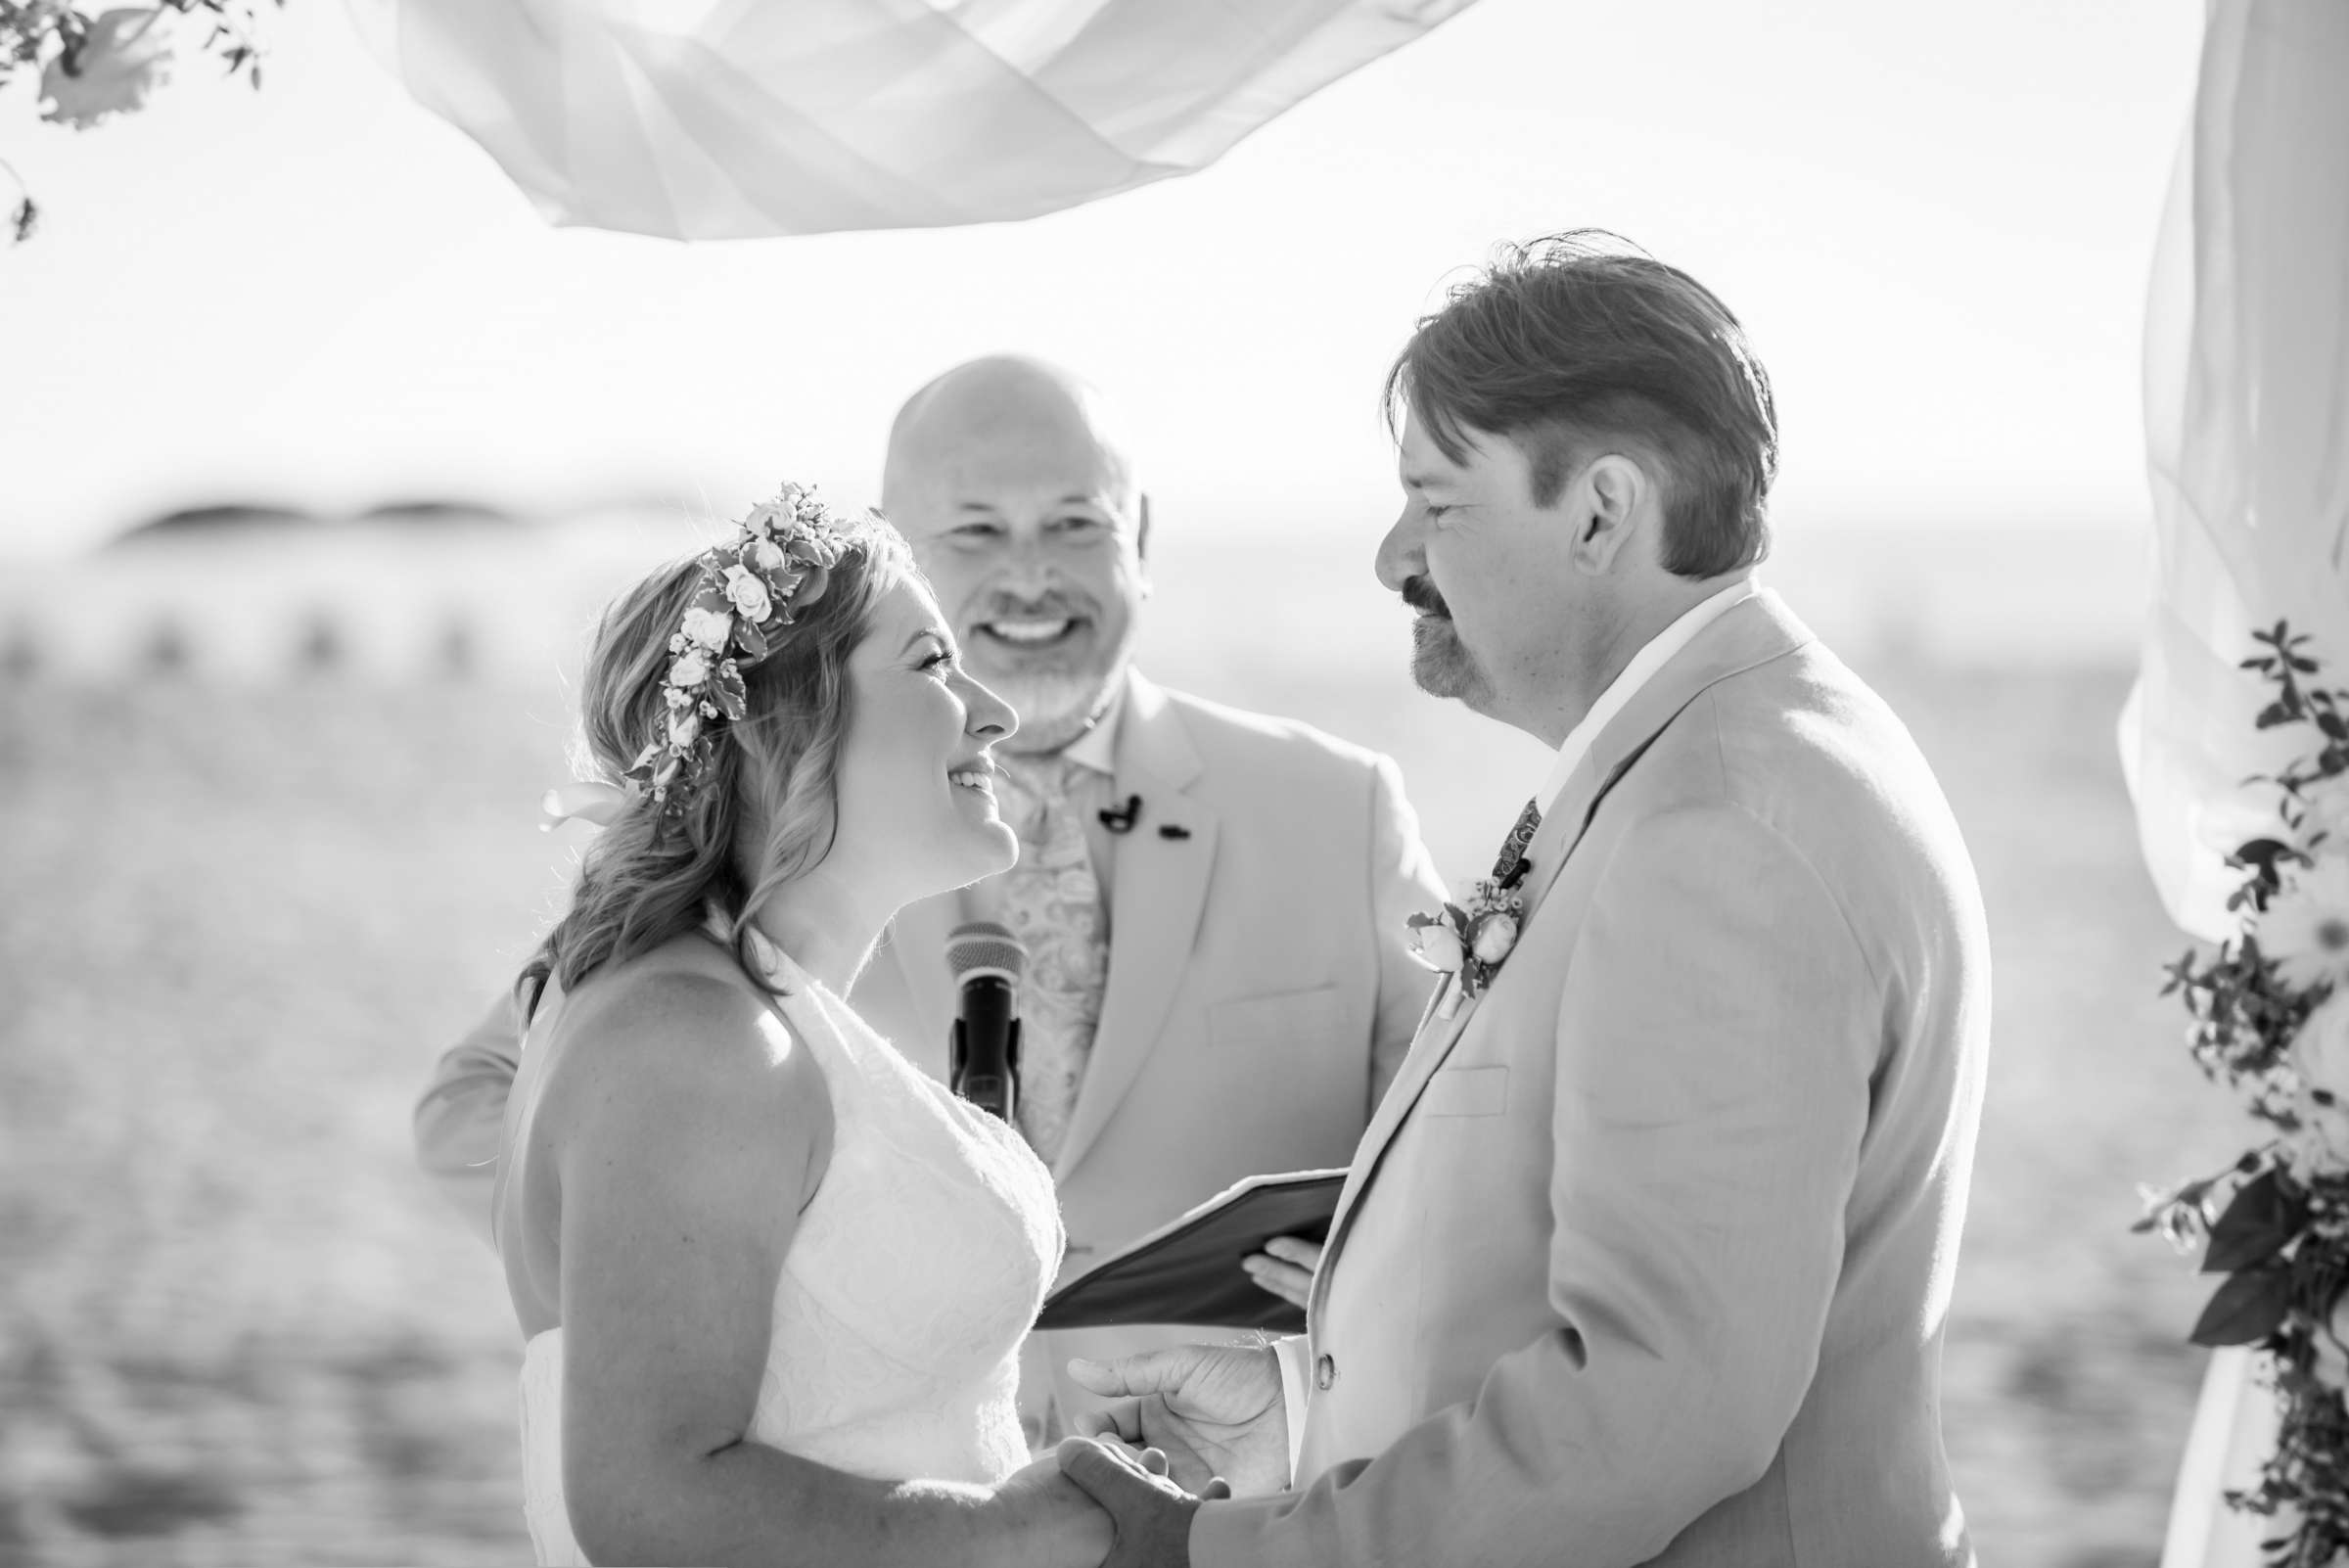 Hotel Del Coronado Wedding, Danielle and Glenn Wedding Photo #6 by True Photography